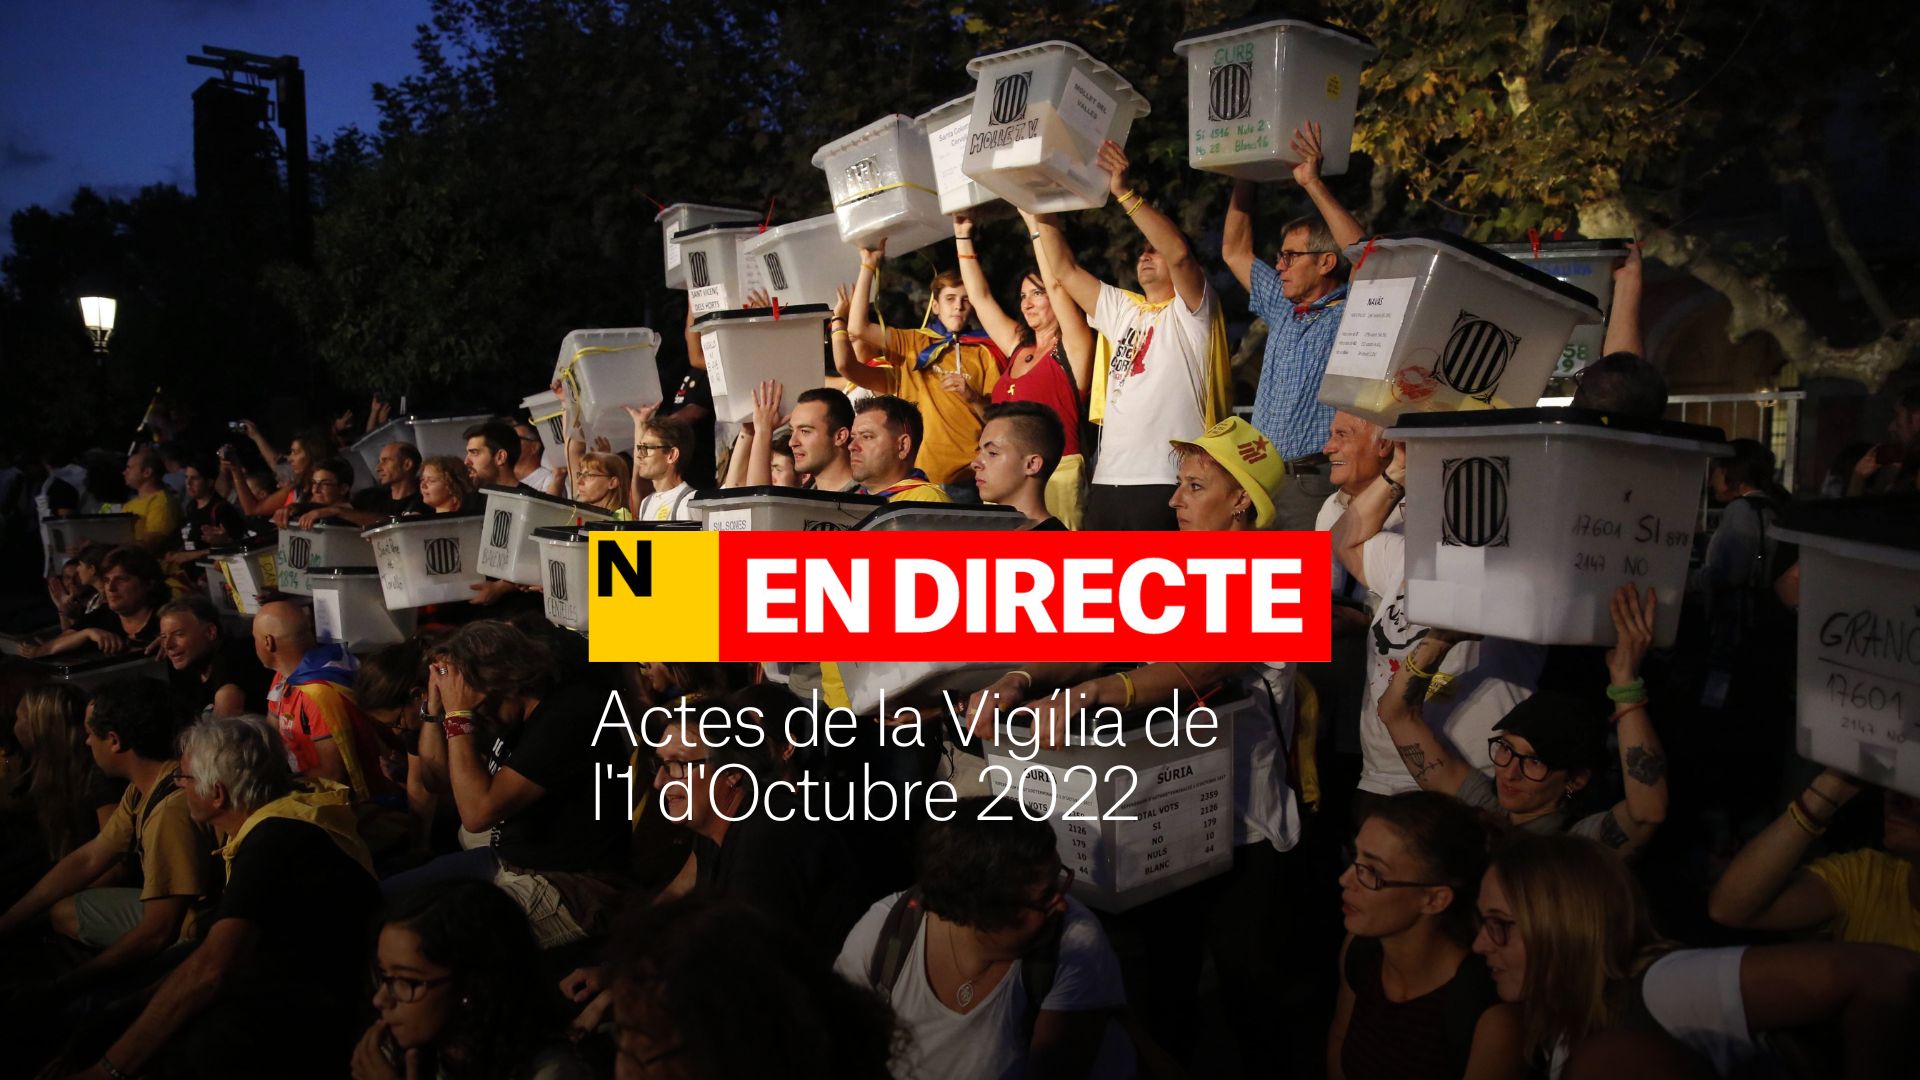 Actes de la vigília de l'1 d'octubre 2022, última hora | Mobilització nocturna a les escoles